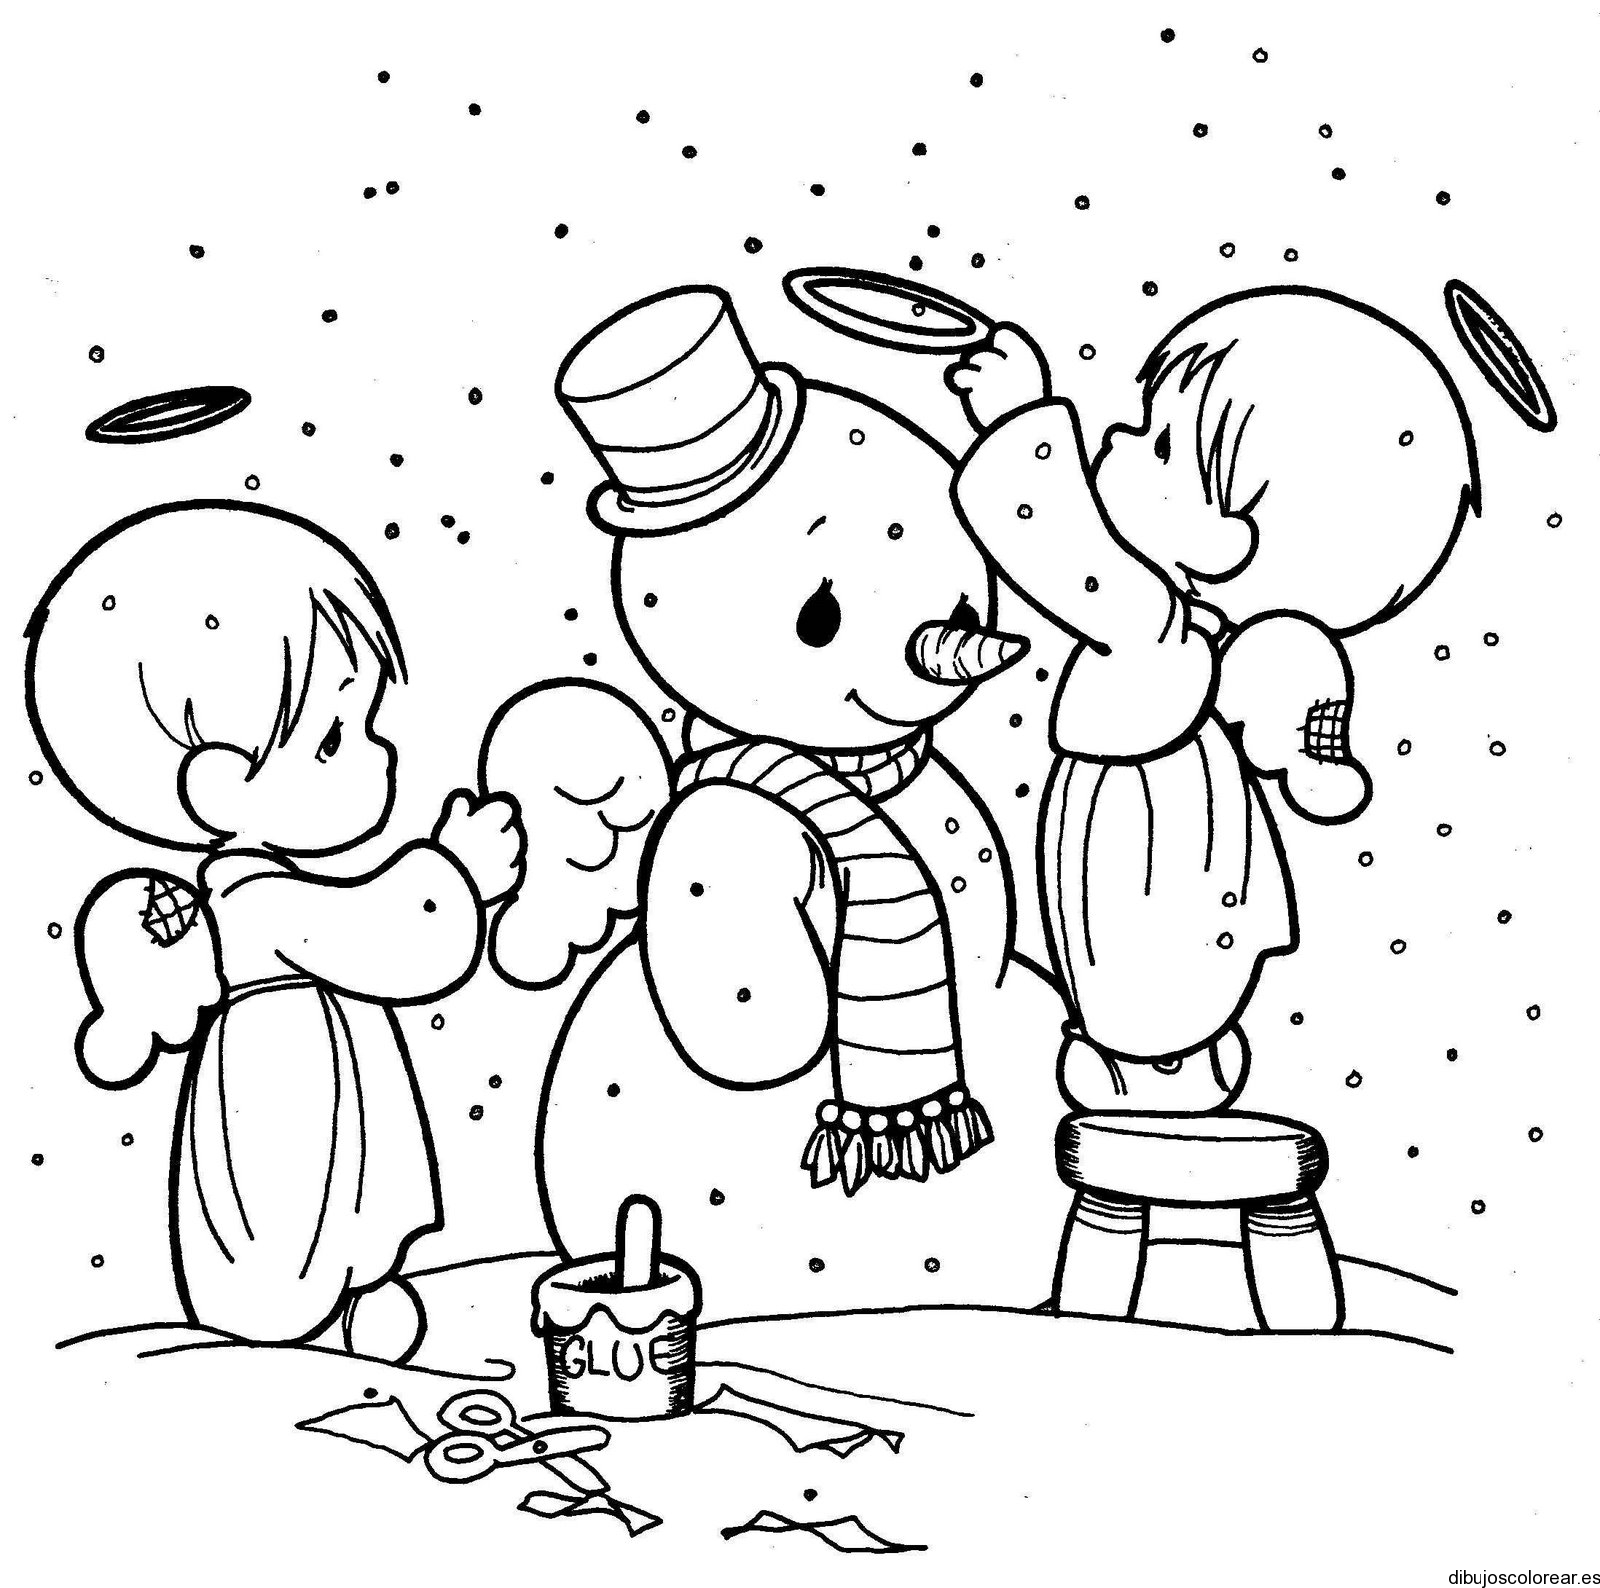 Dibujo de dos niños y el hombre de nieve